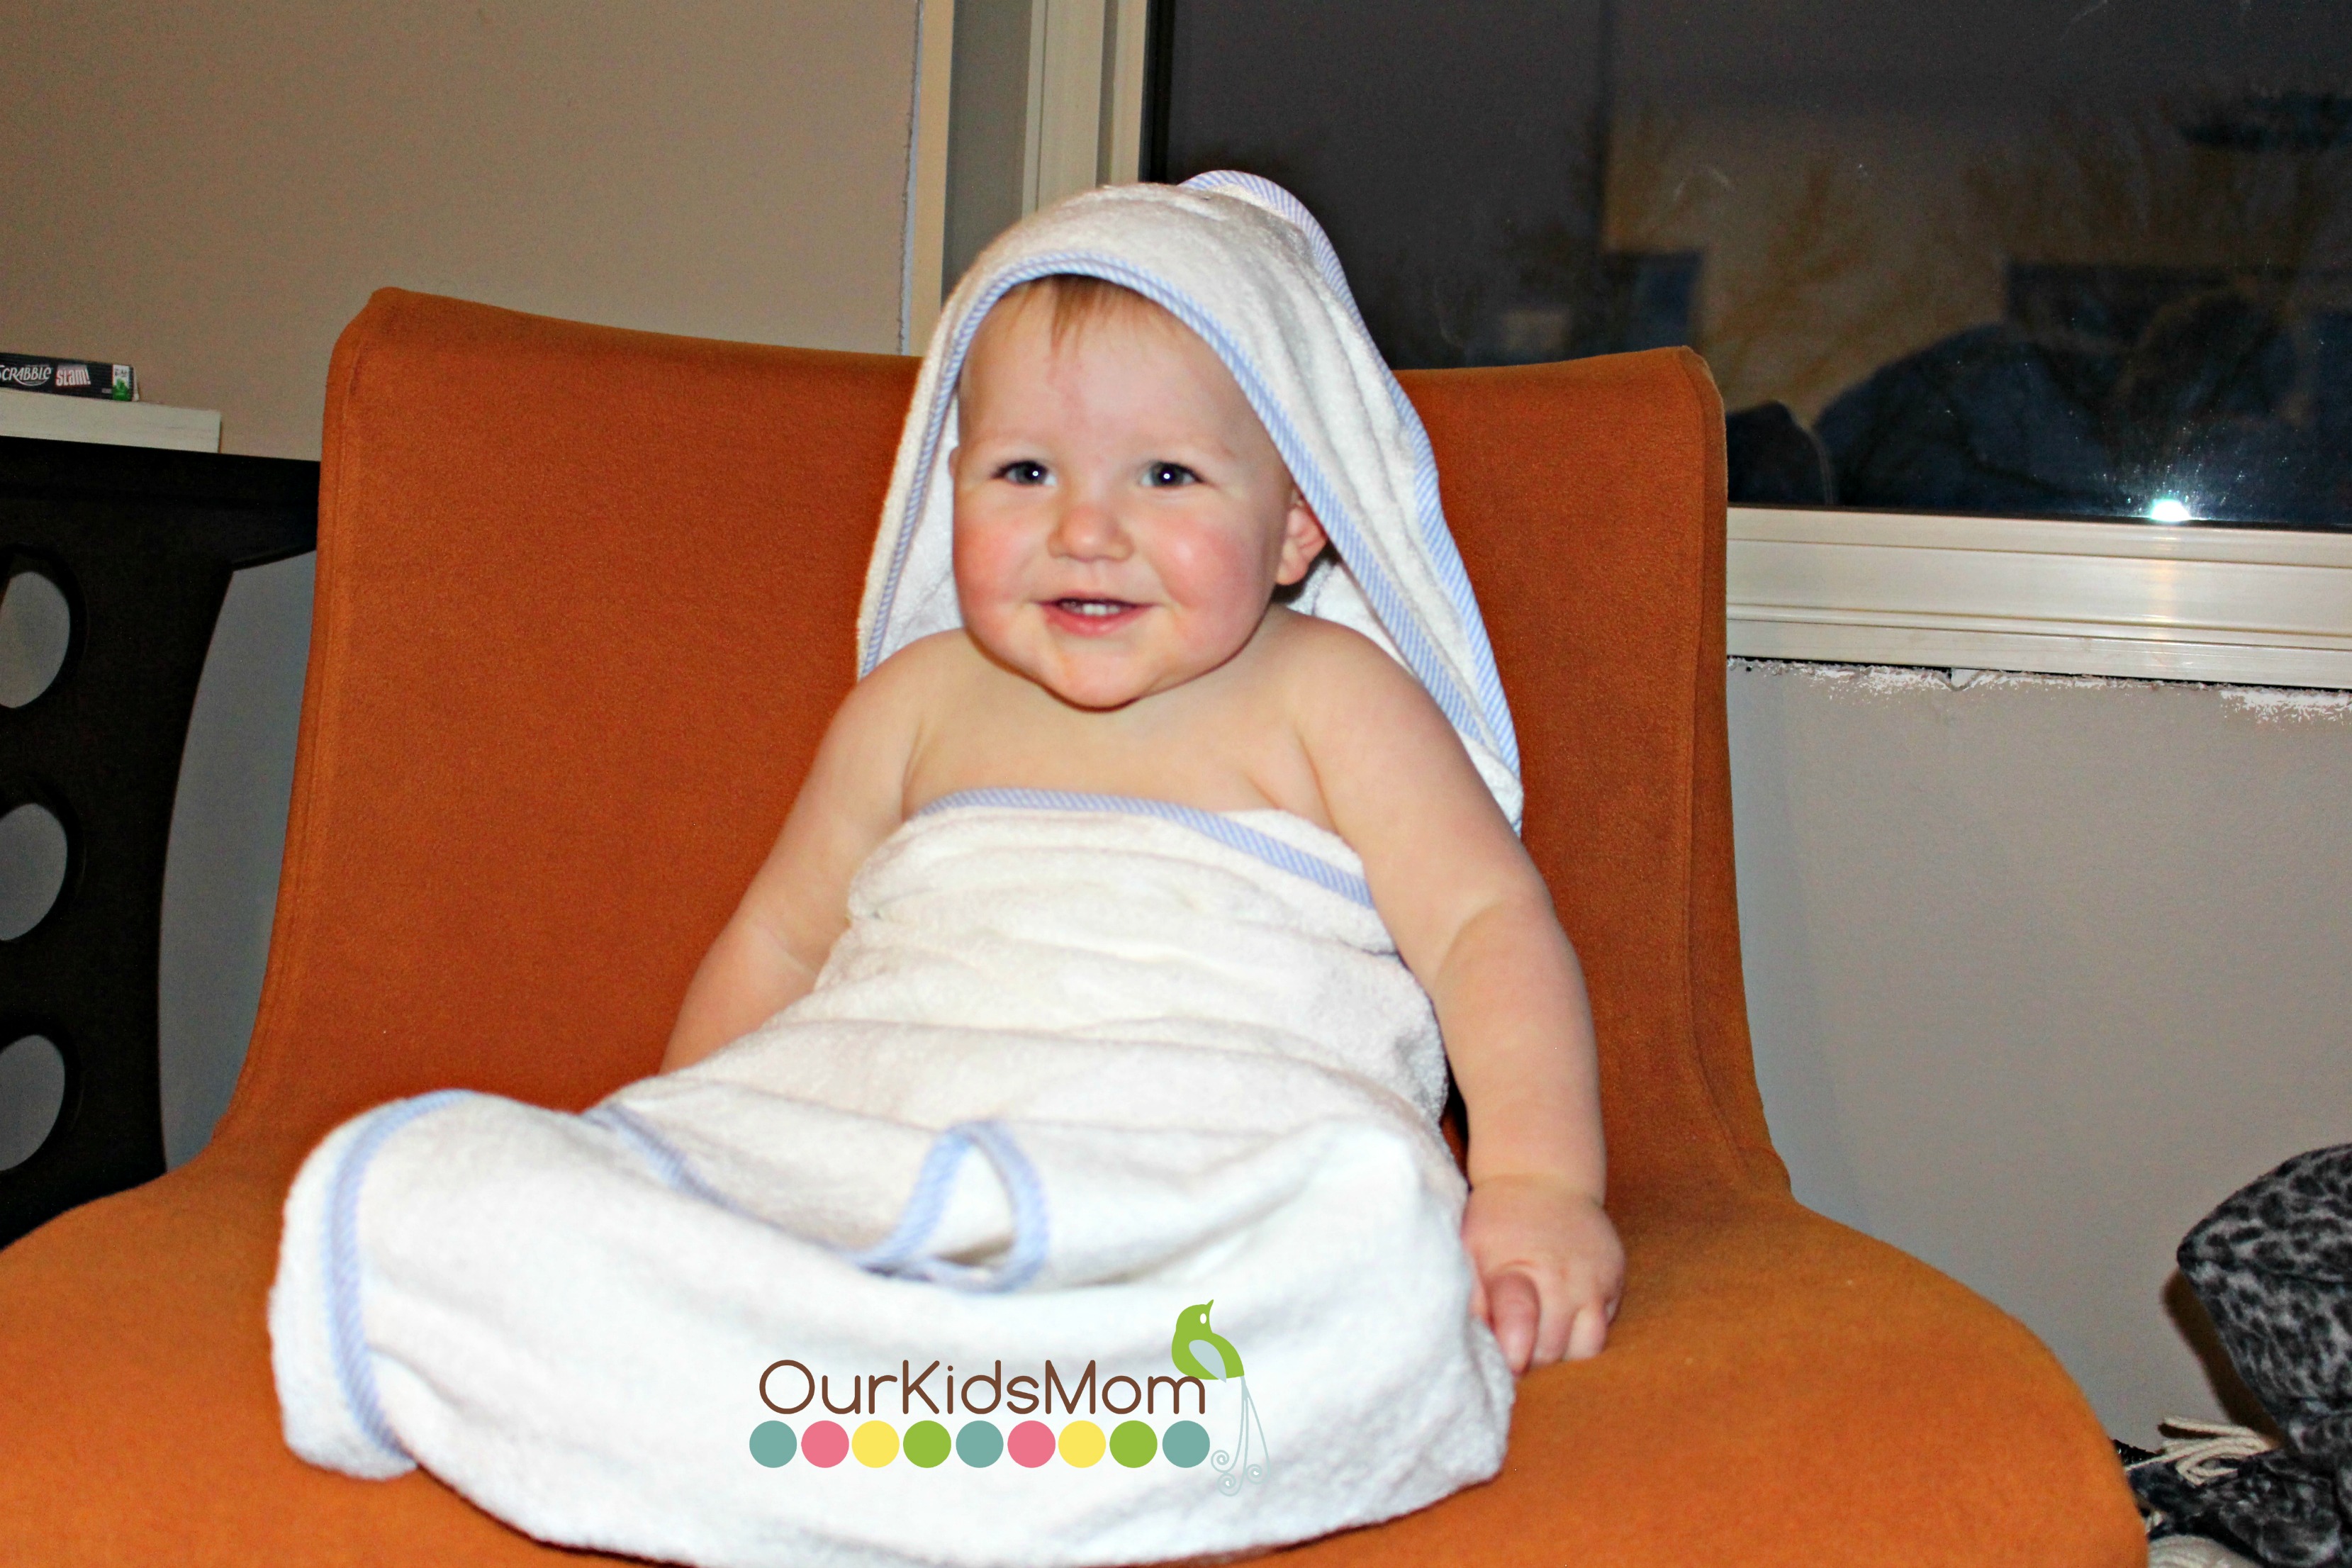 Toddler wearing towel